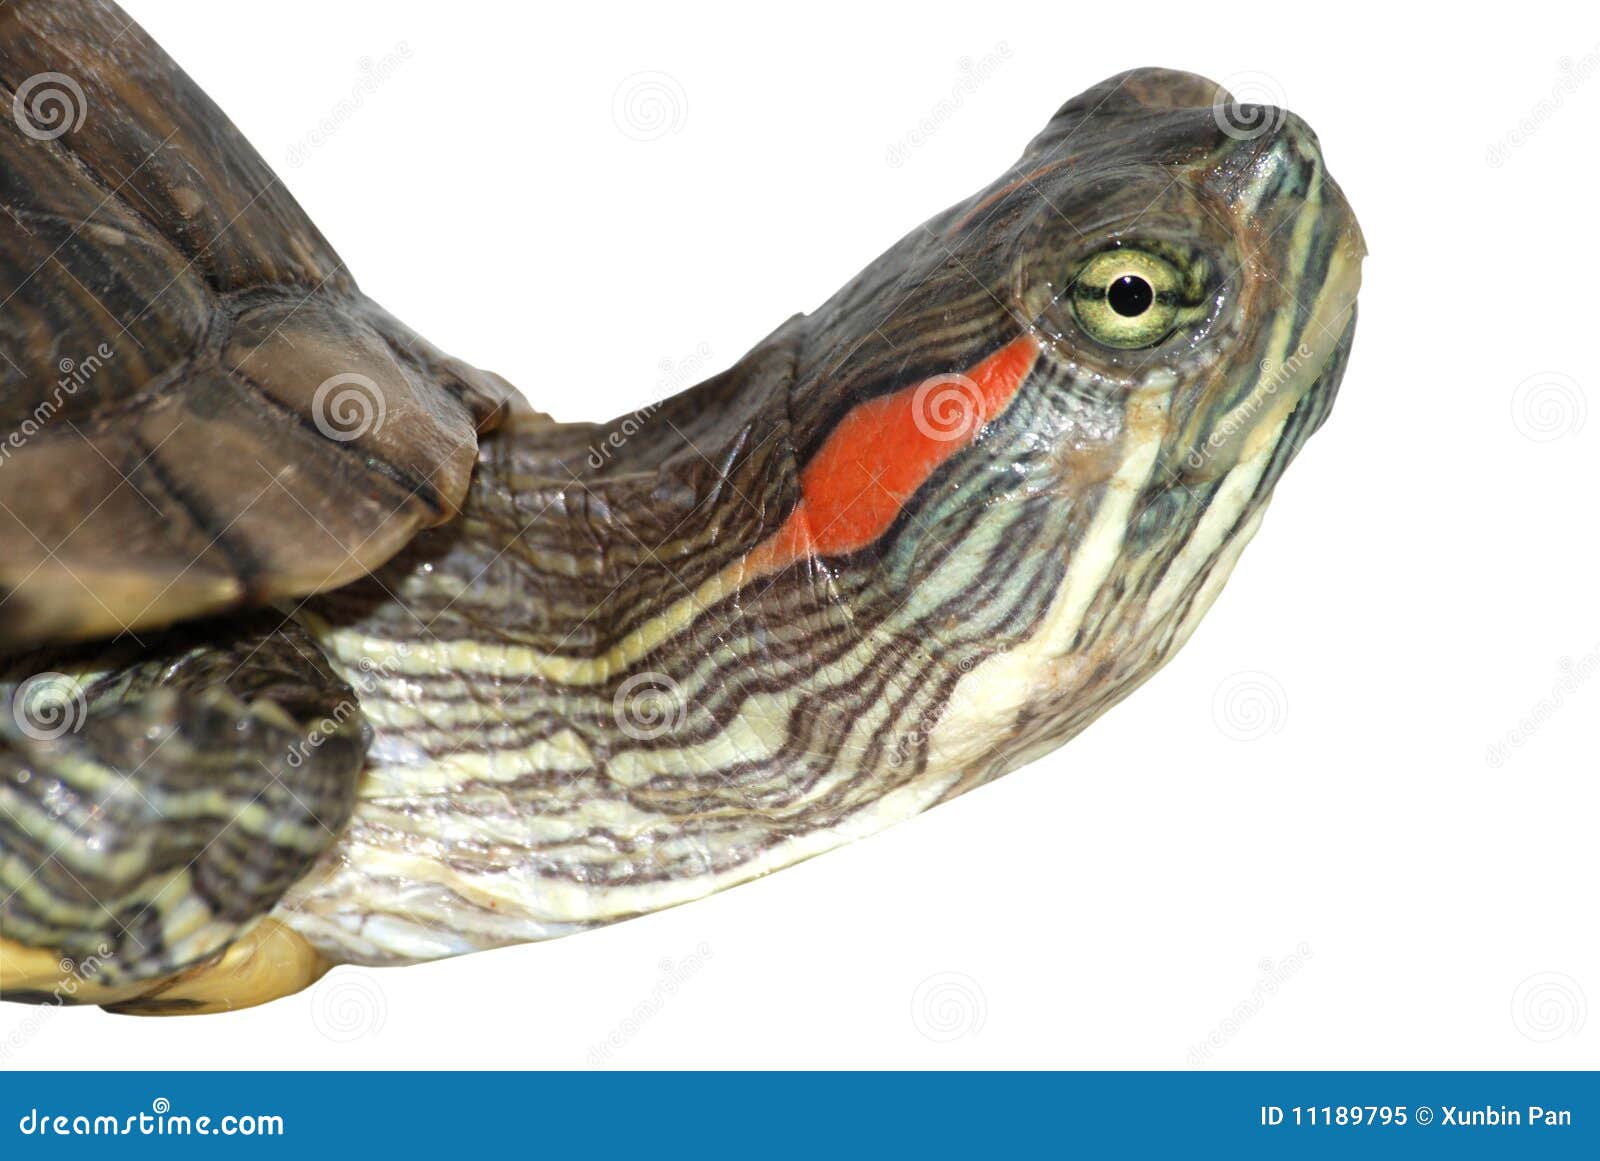 red-ear-turtle-head-11189795.jpg